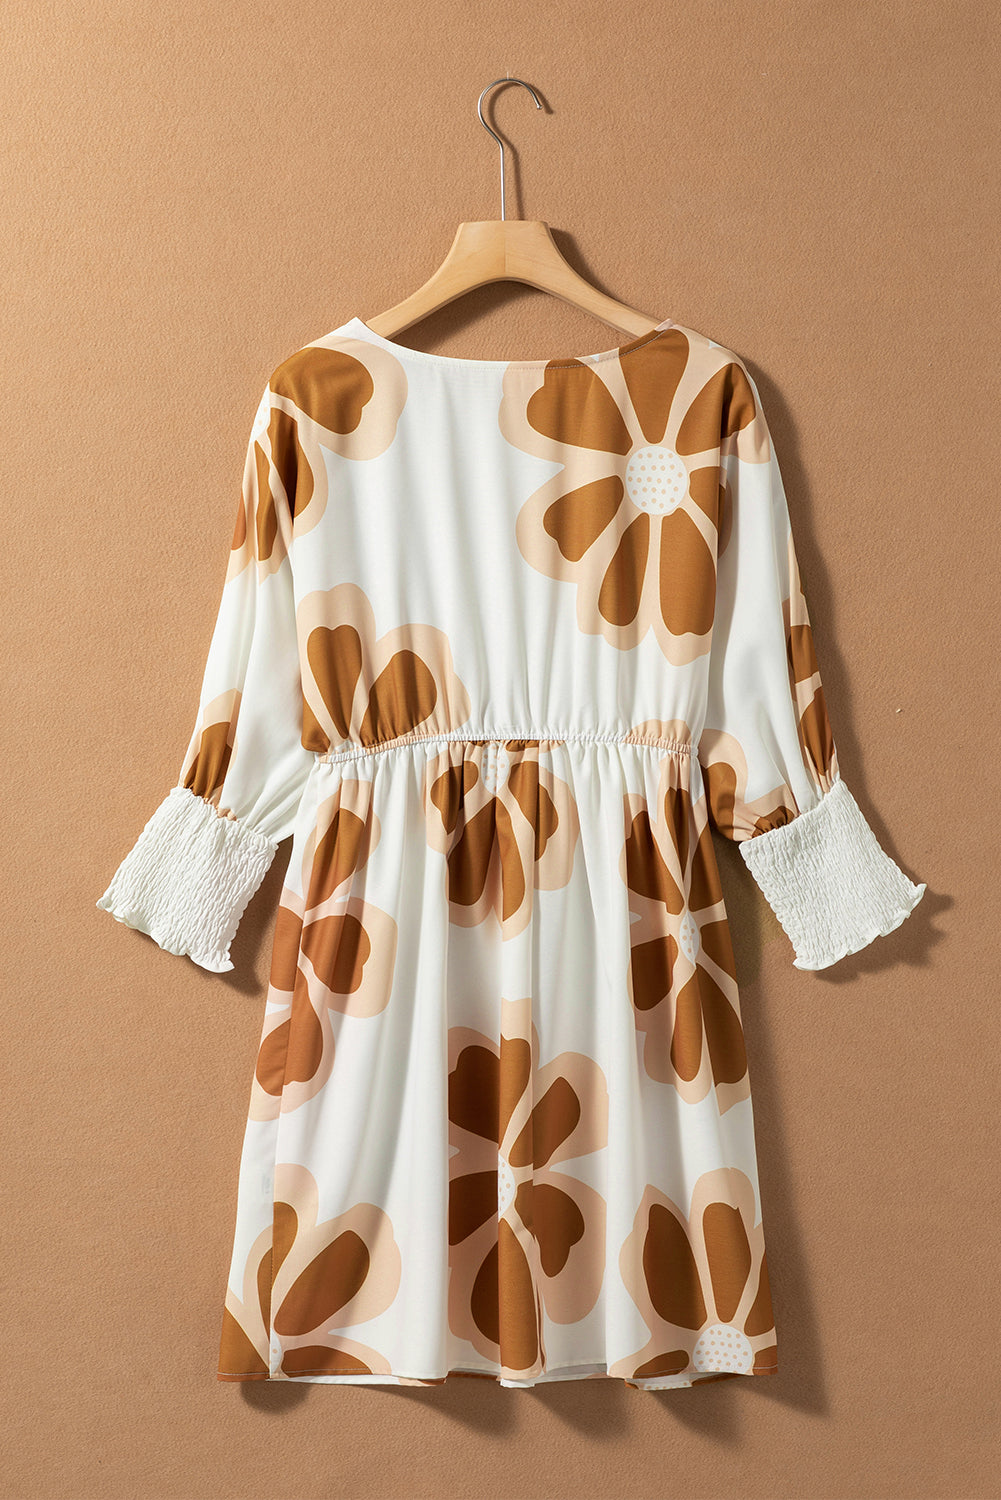 Brown Big Flower Print 3/4 Sleeve Short Dress Floral Dresses JT's Designer Fashion